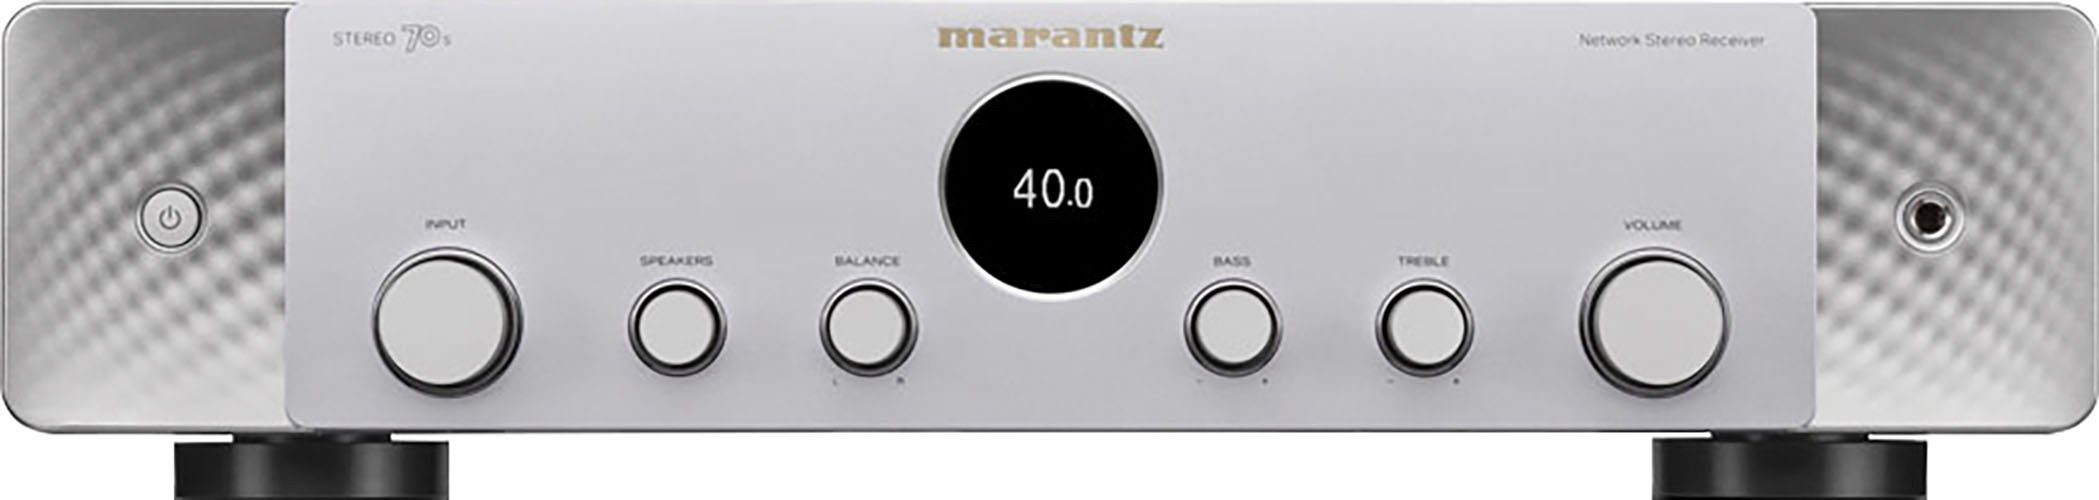 AV-Receiver 70S Stereo 2.1 WLAN) LAN Marantz (Ethernet), (Bluetooth, Silber/Gold